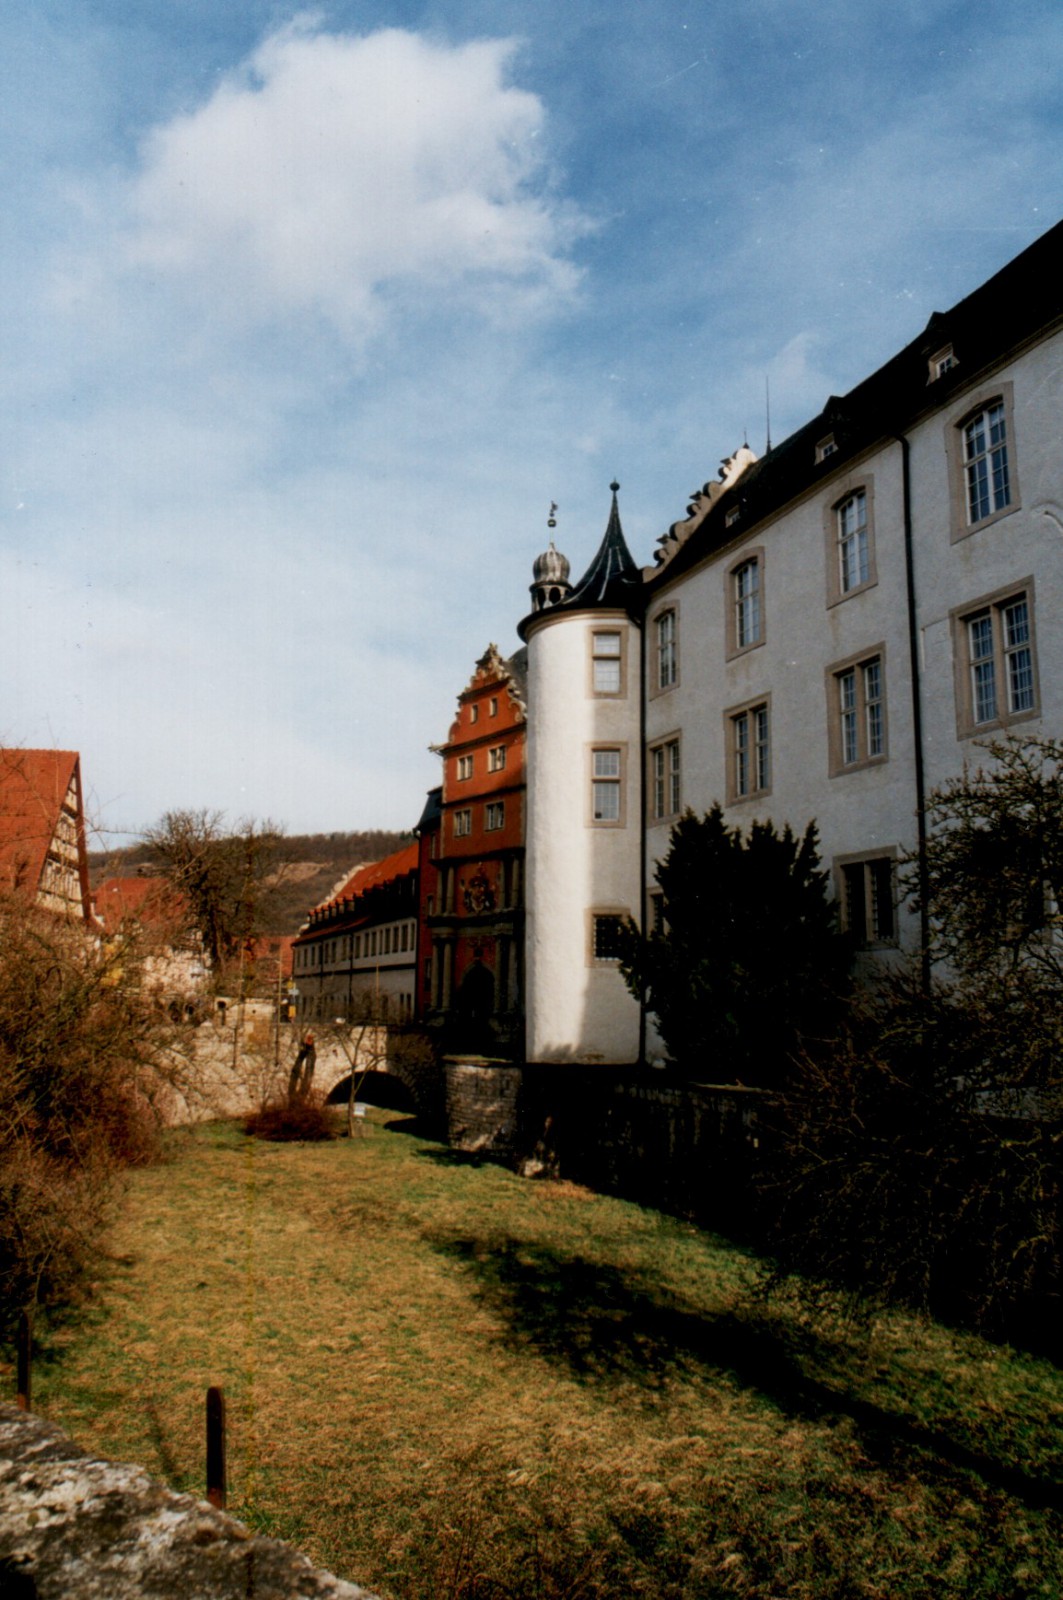 Mergentheim